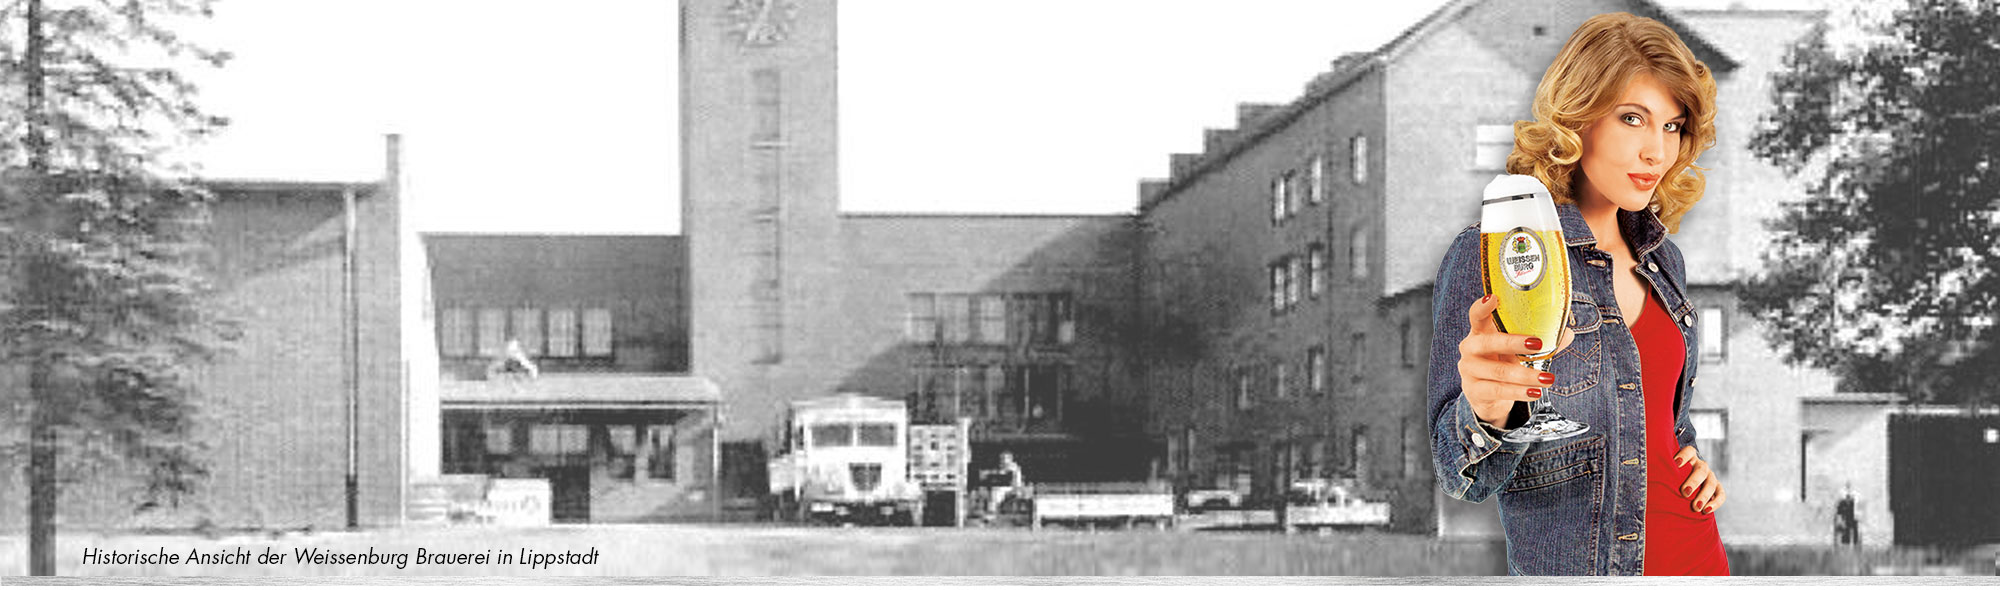 Weissenburg Brauerei Historie